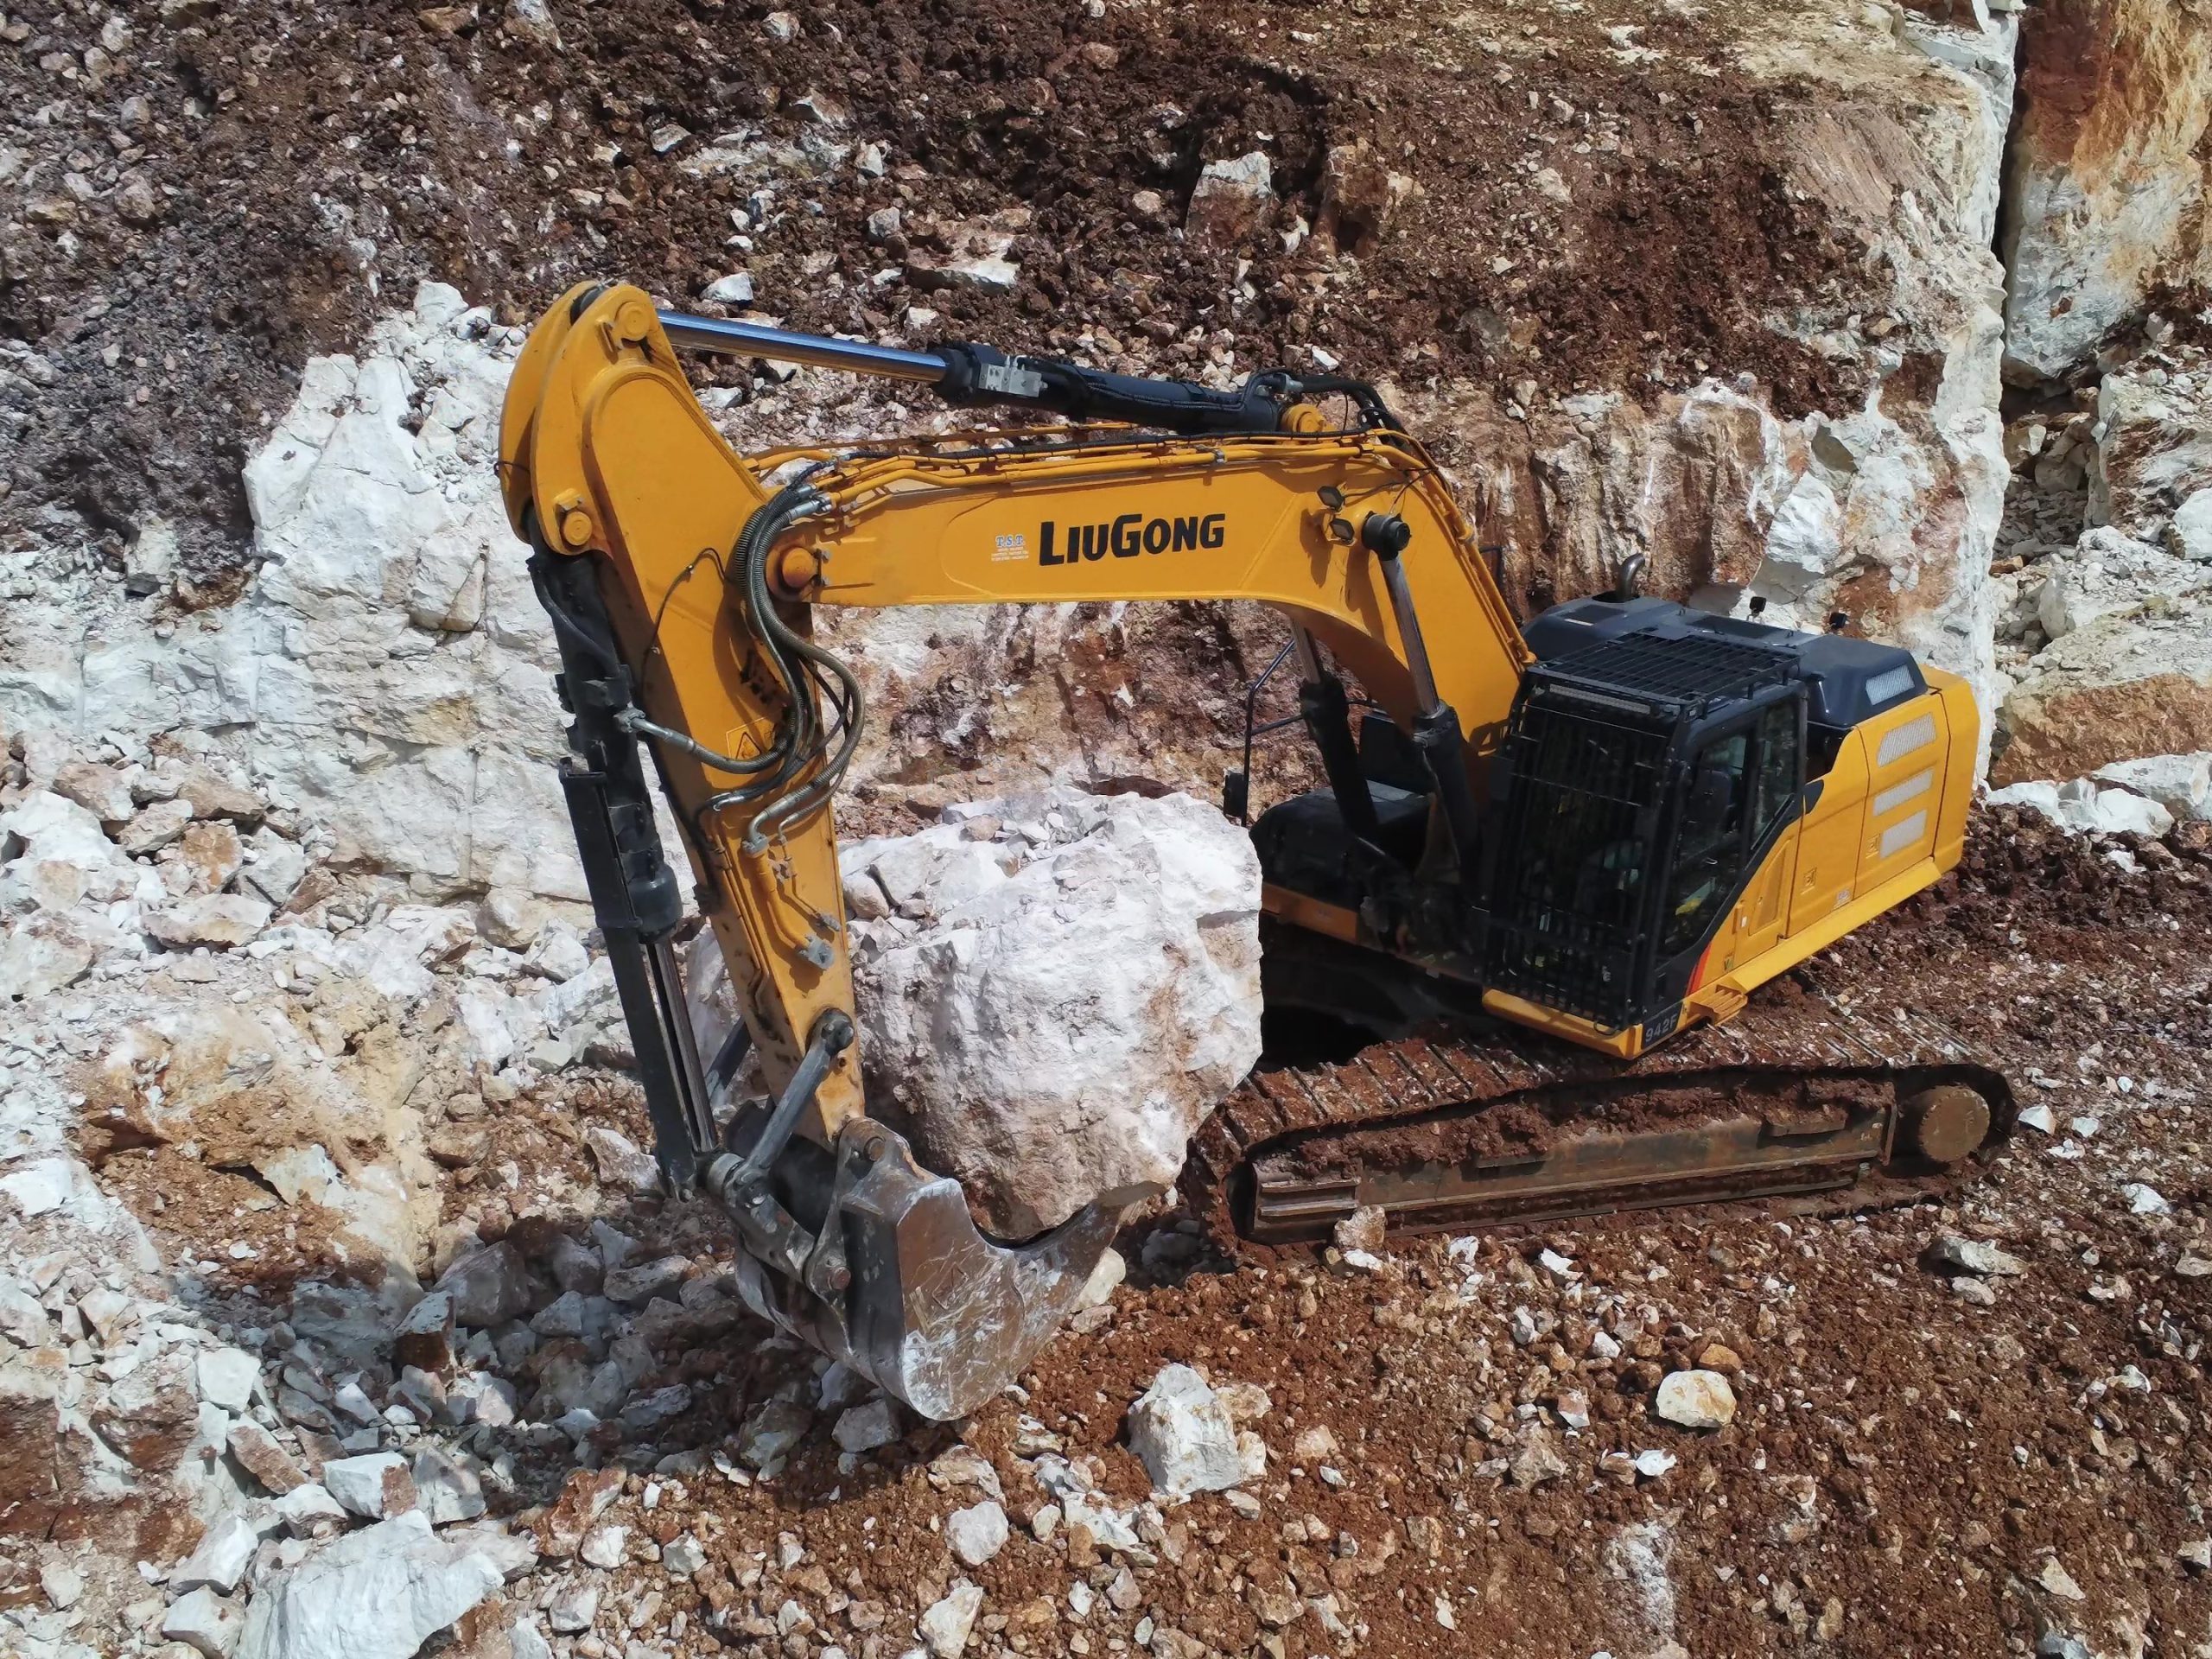 Il 942F è uno degli escavatori idraulici più indirizzati verso il lavoro di cava